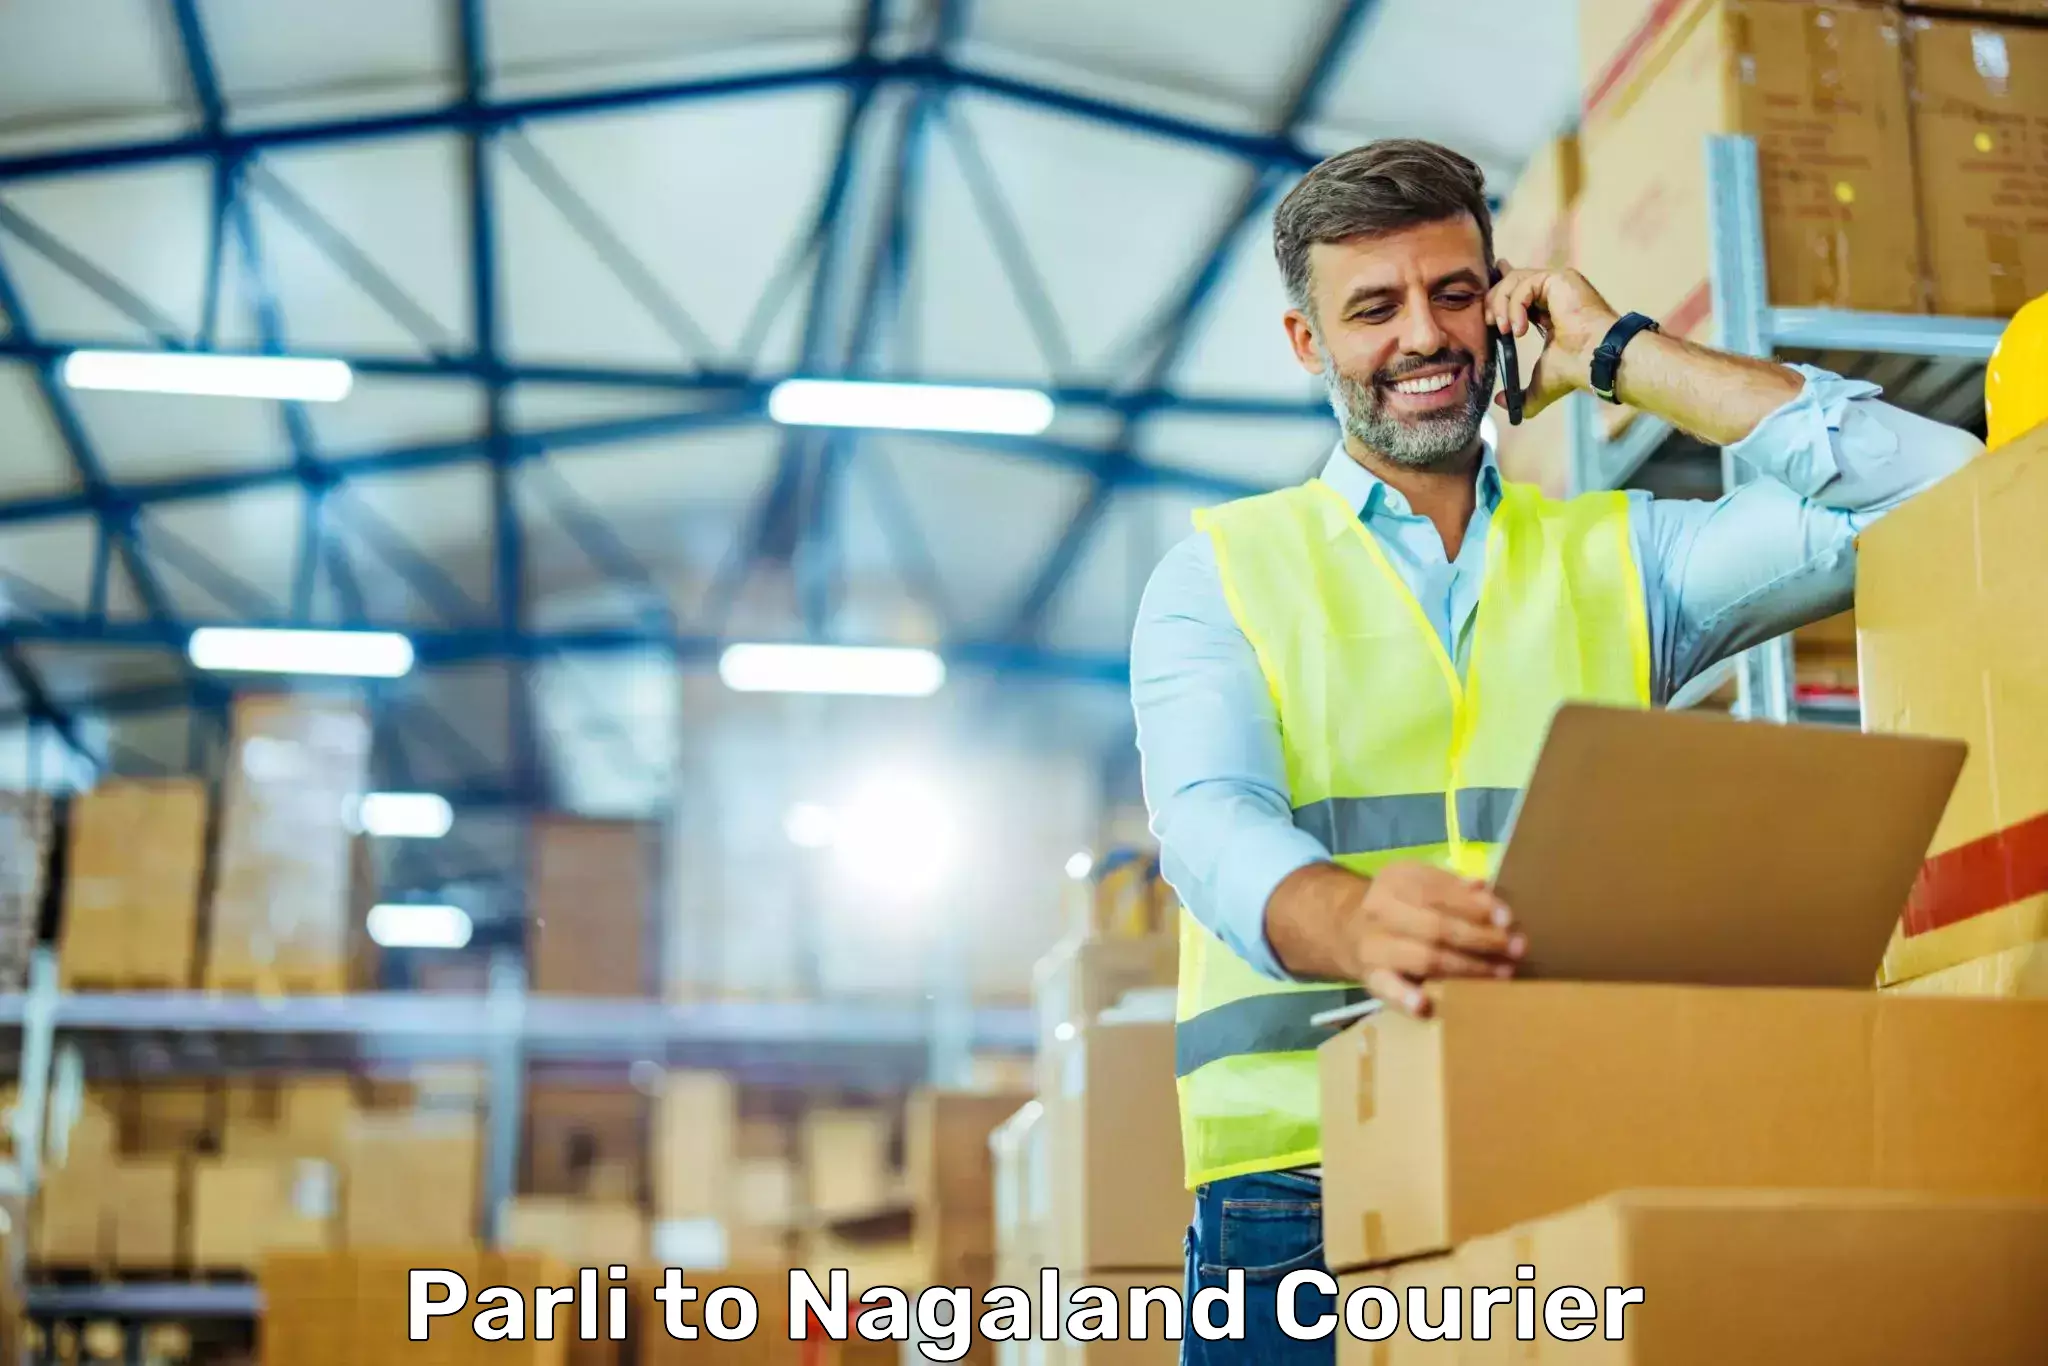 Customer-centric shipping Parli to NIT Nagaland